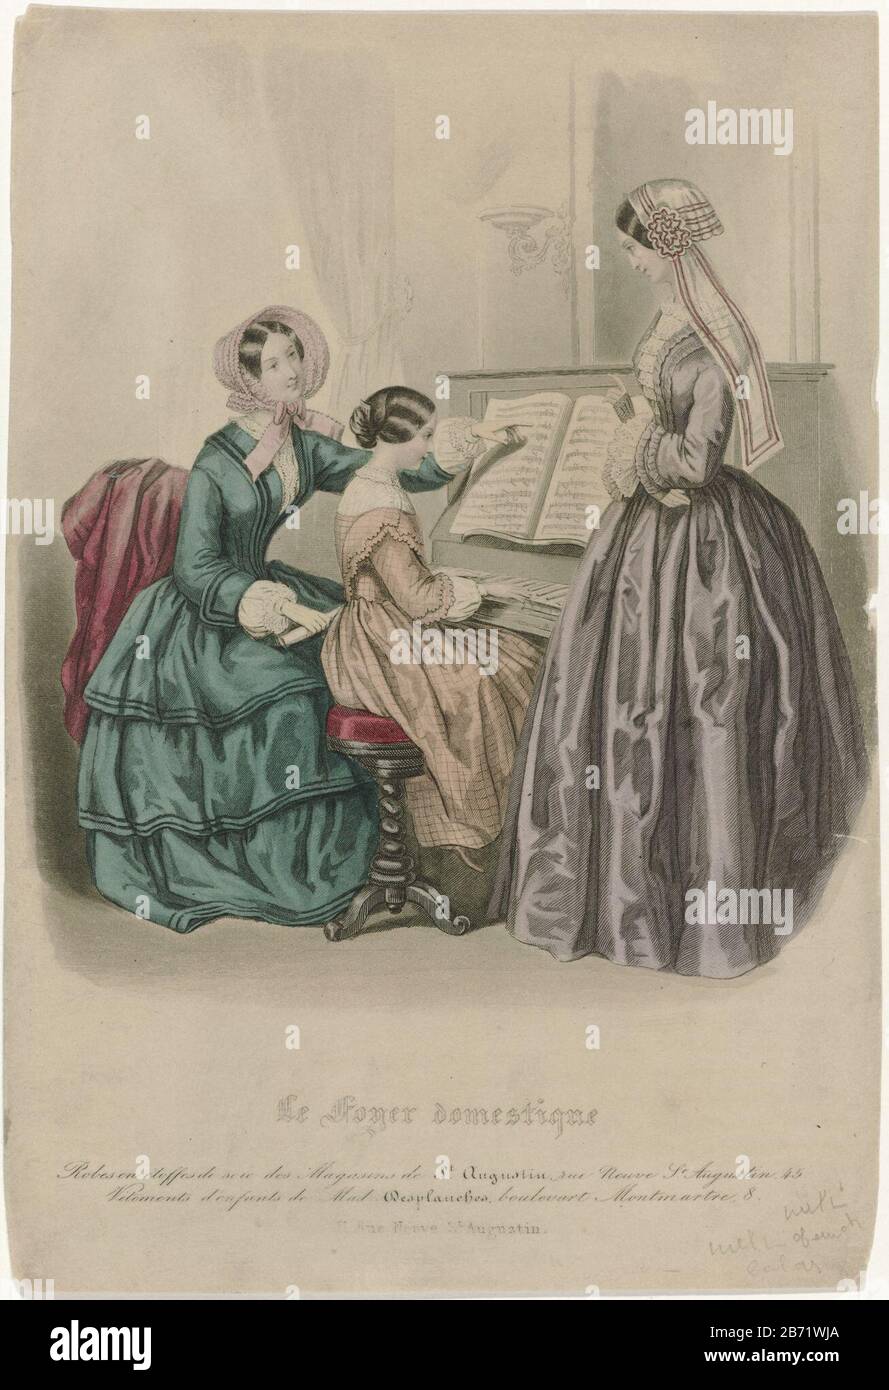 Le Foyer domestique, CA 1850 Batas en etoffes de soi () Interior con niña detrás del piano y dos mujeres. Según la leyenda, llevan de seda de las tiendas de San